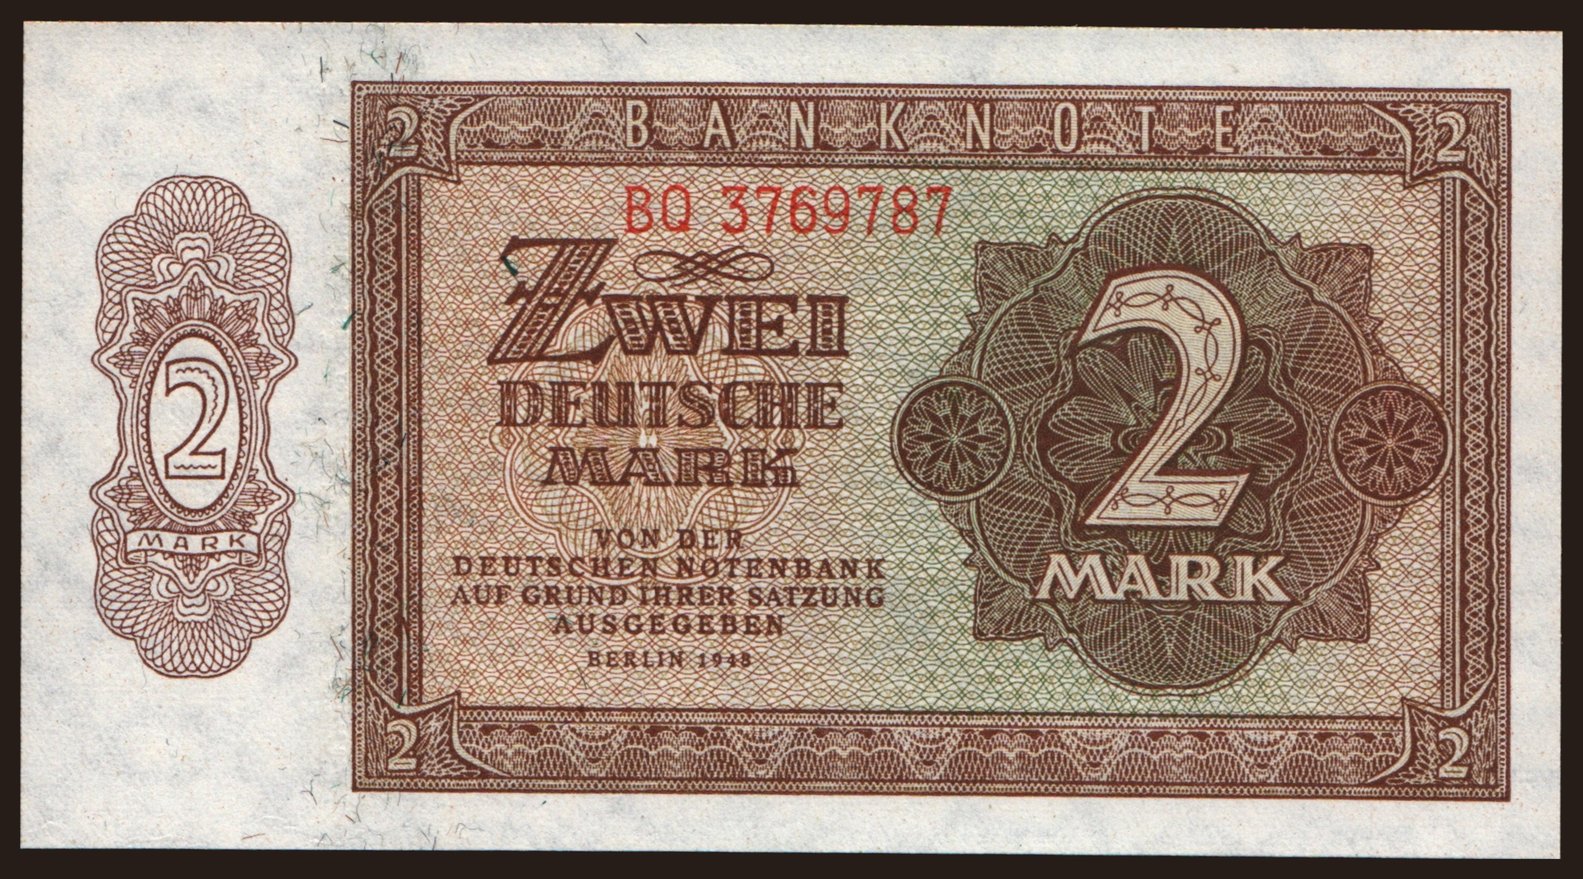 2 Mark, 1948